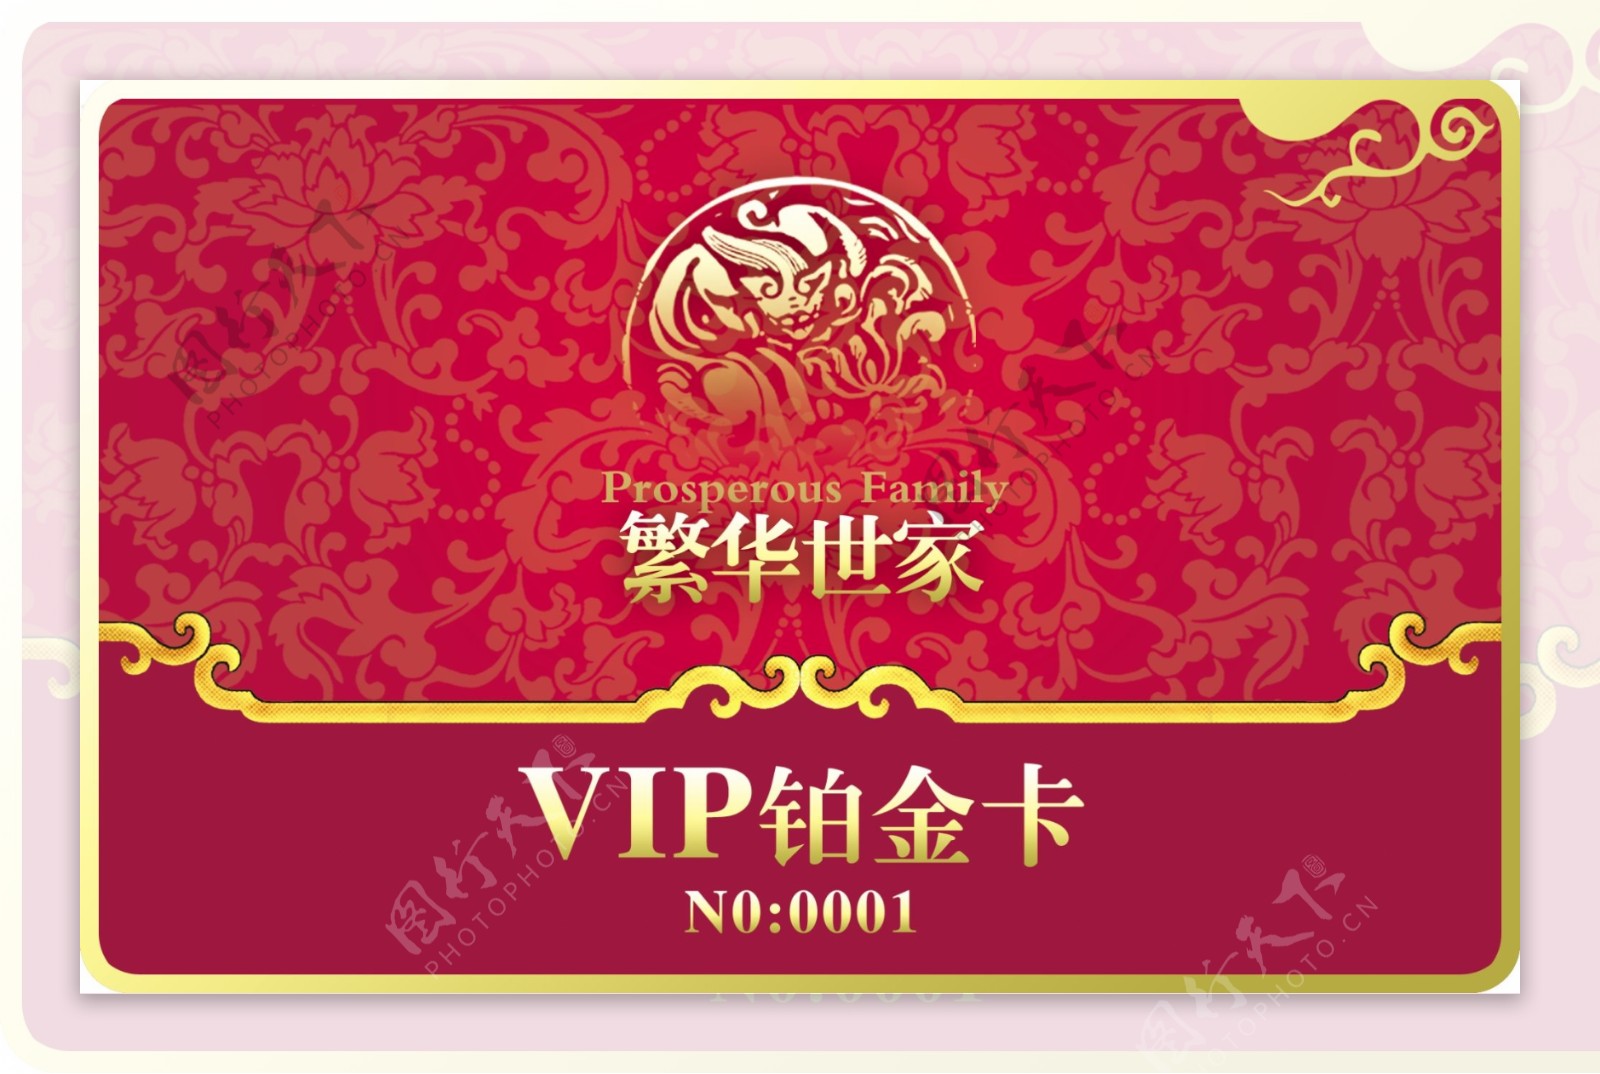 繁华世家VIP铂金卡正面VI设计宣传画册分层PSD